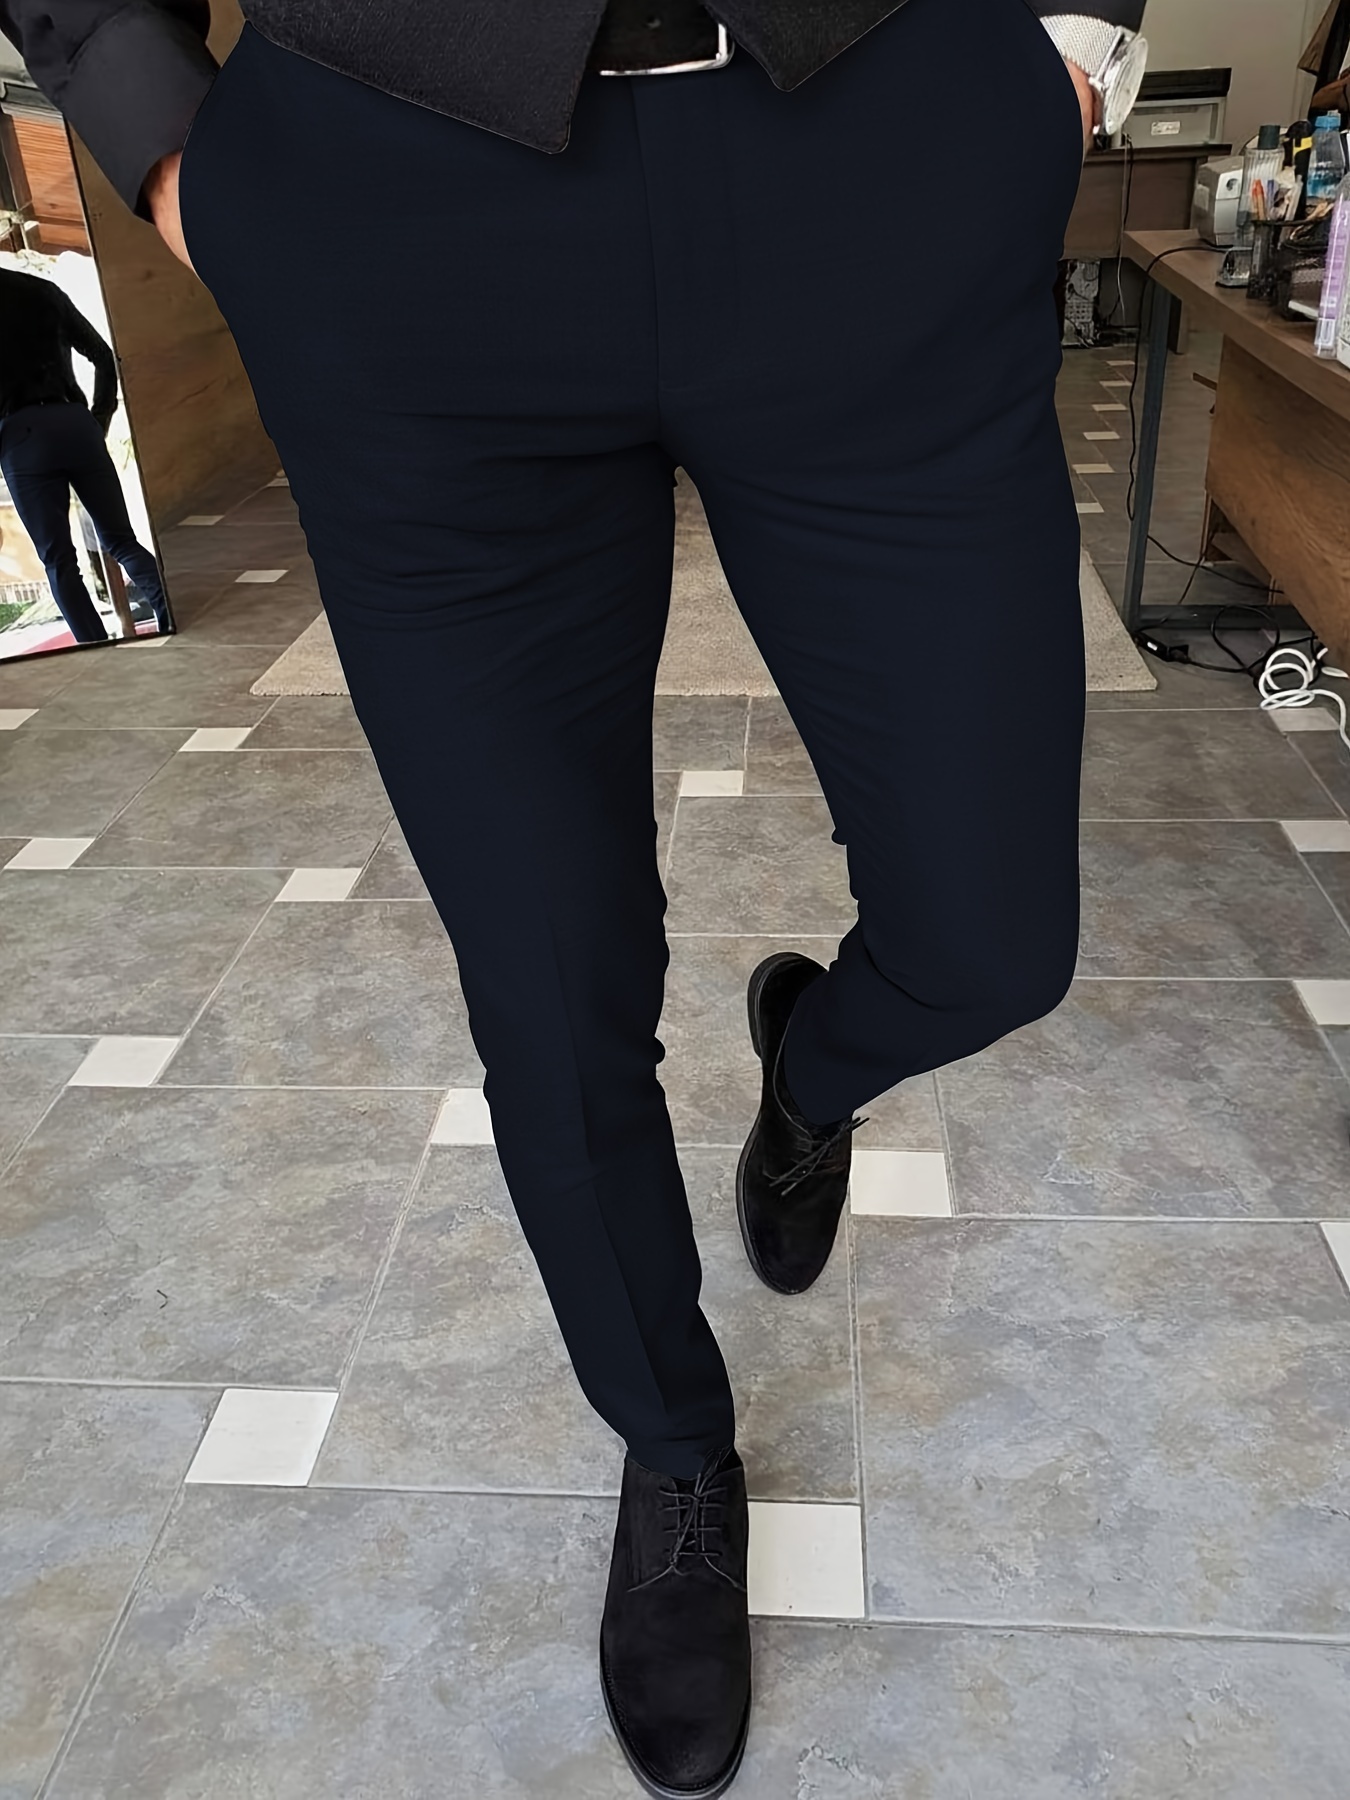 Classic Design Pantalon Habillé, Pantalon Habillé Solide Pour Homme  Légèrement Extensible Pour Les Affaires